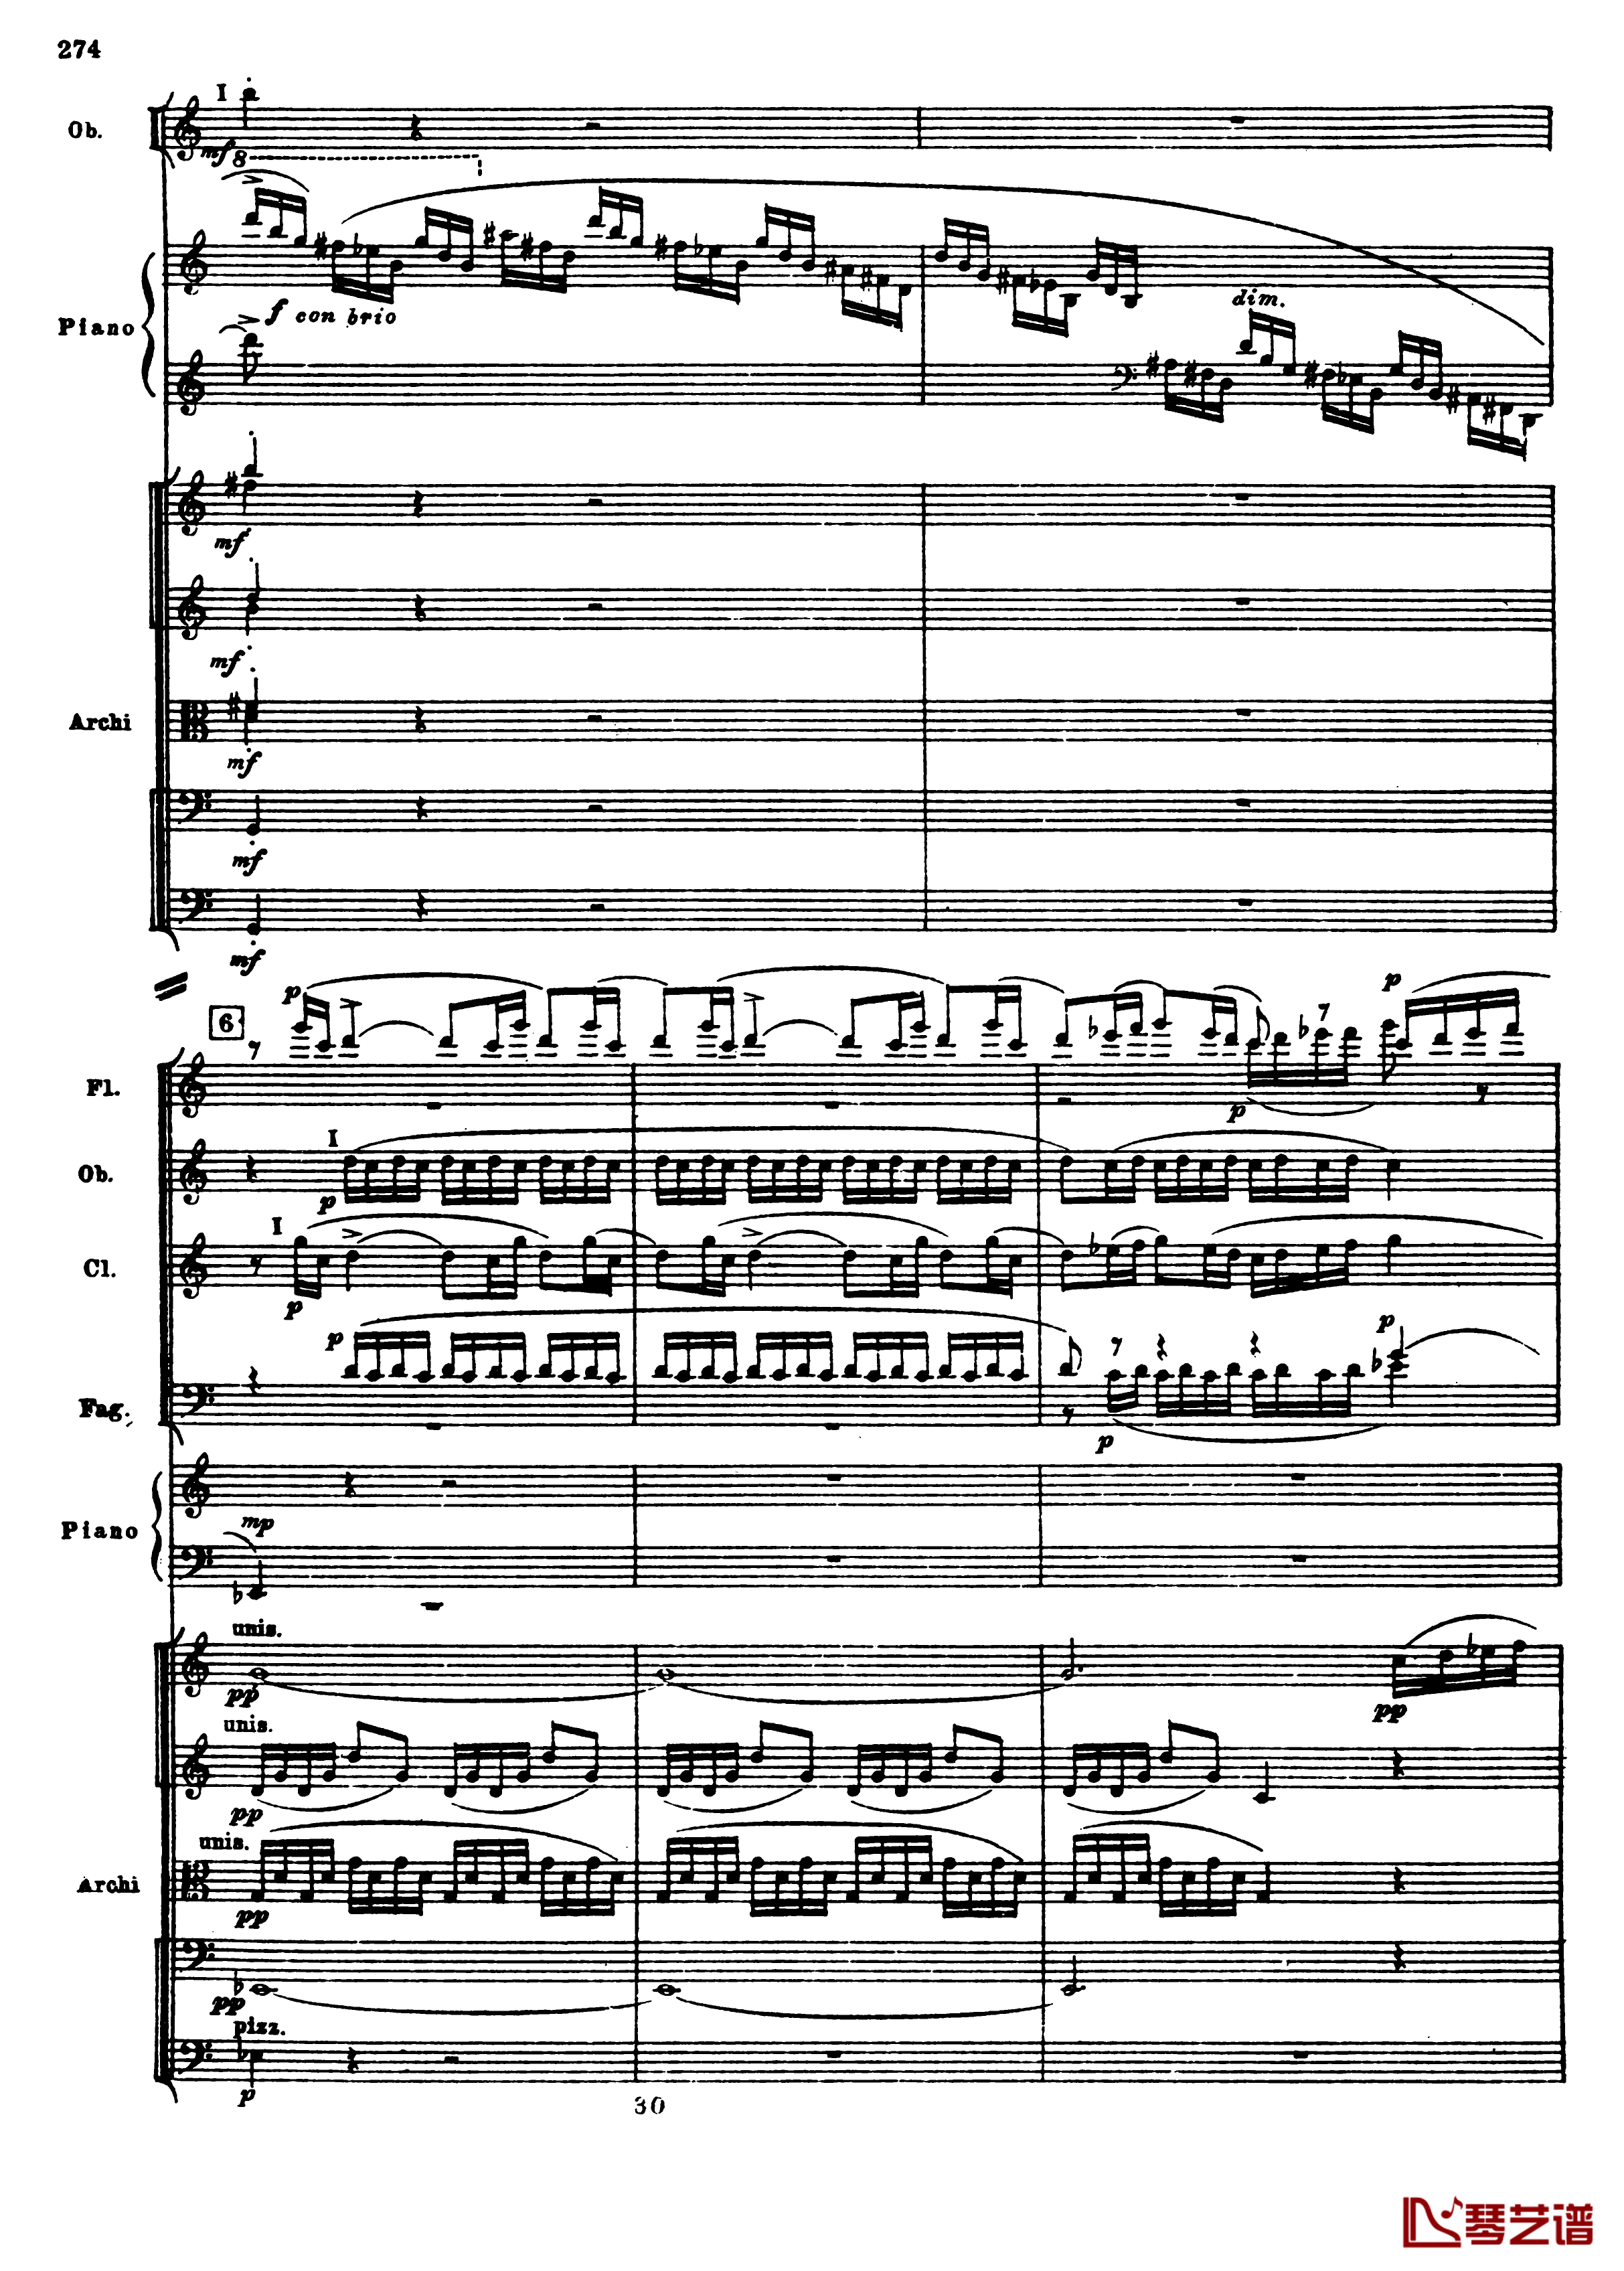 普罗科菲耶夫第三钢琴协奏曲钢琴谱-总谱-普罗科非耶夫6